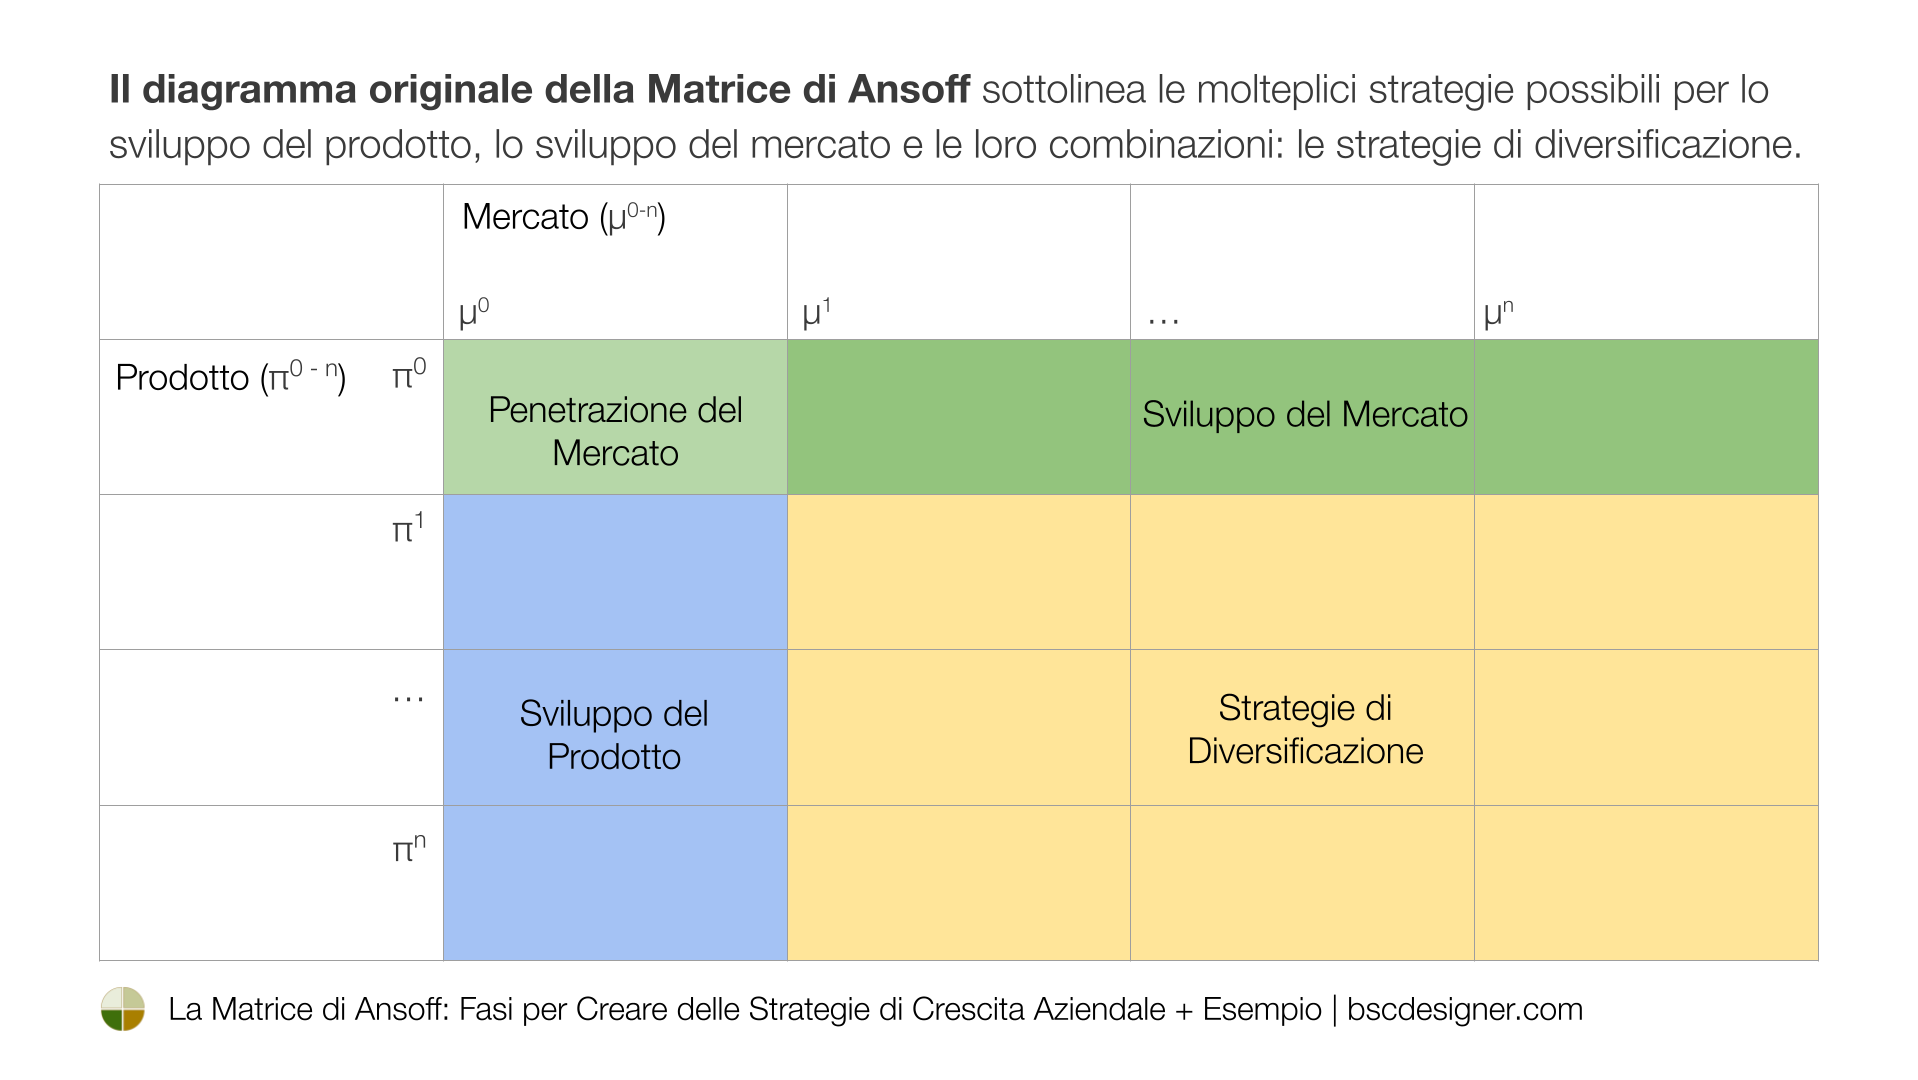 Il diagramma originale della Matrice di Ansoff sottolinea le molteplici strategie possibili per lo sviluppo del prodotto, lo sviluppo del mercato e le loro combinazioni: le strategie di diversificazione. 